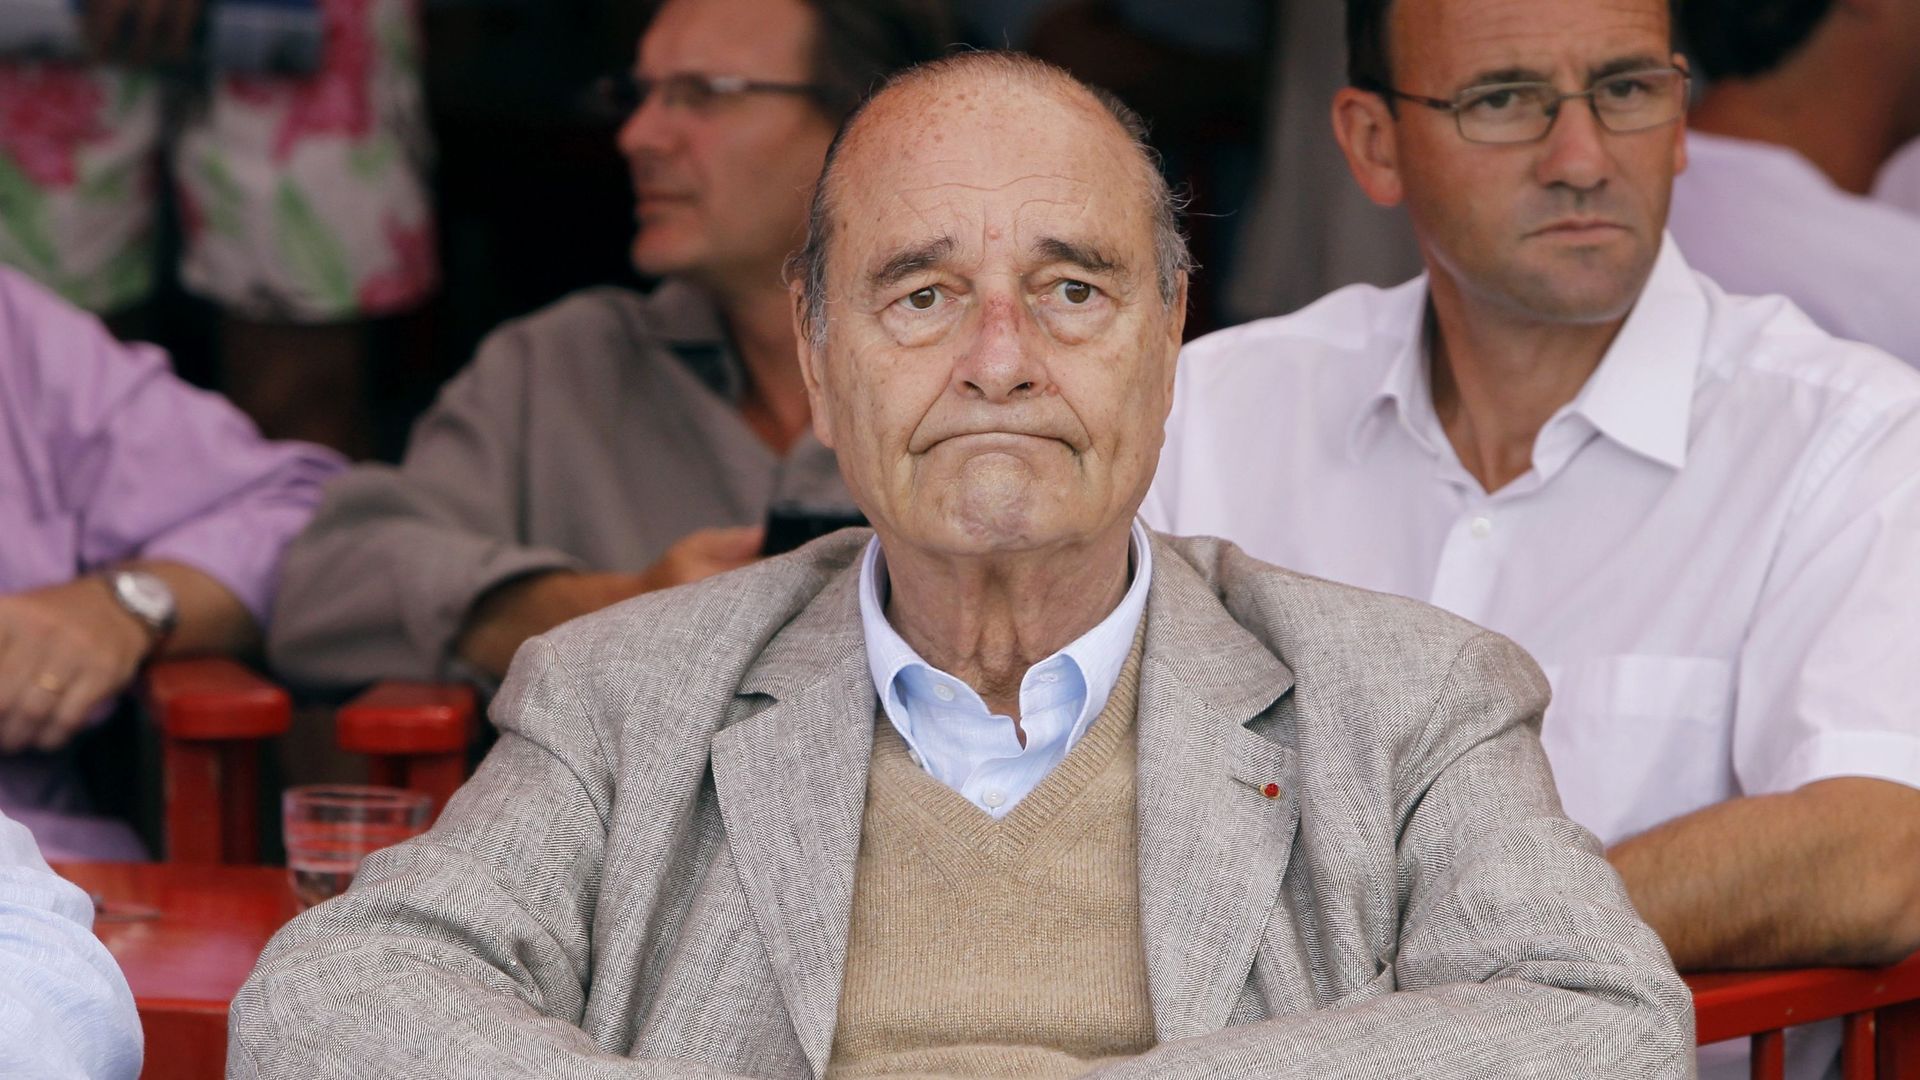 "Affaibli depuis quelques jours", Jacques Chirac est hospitalisé